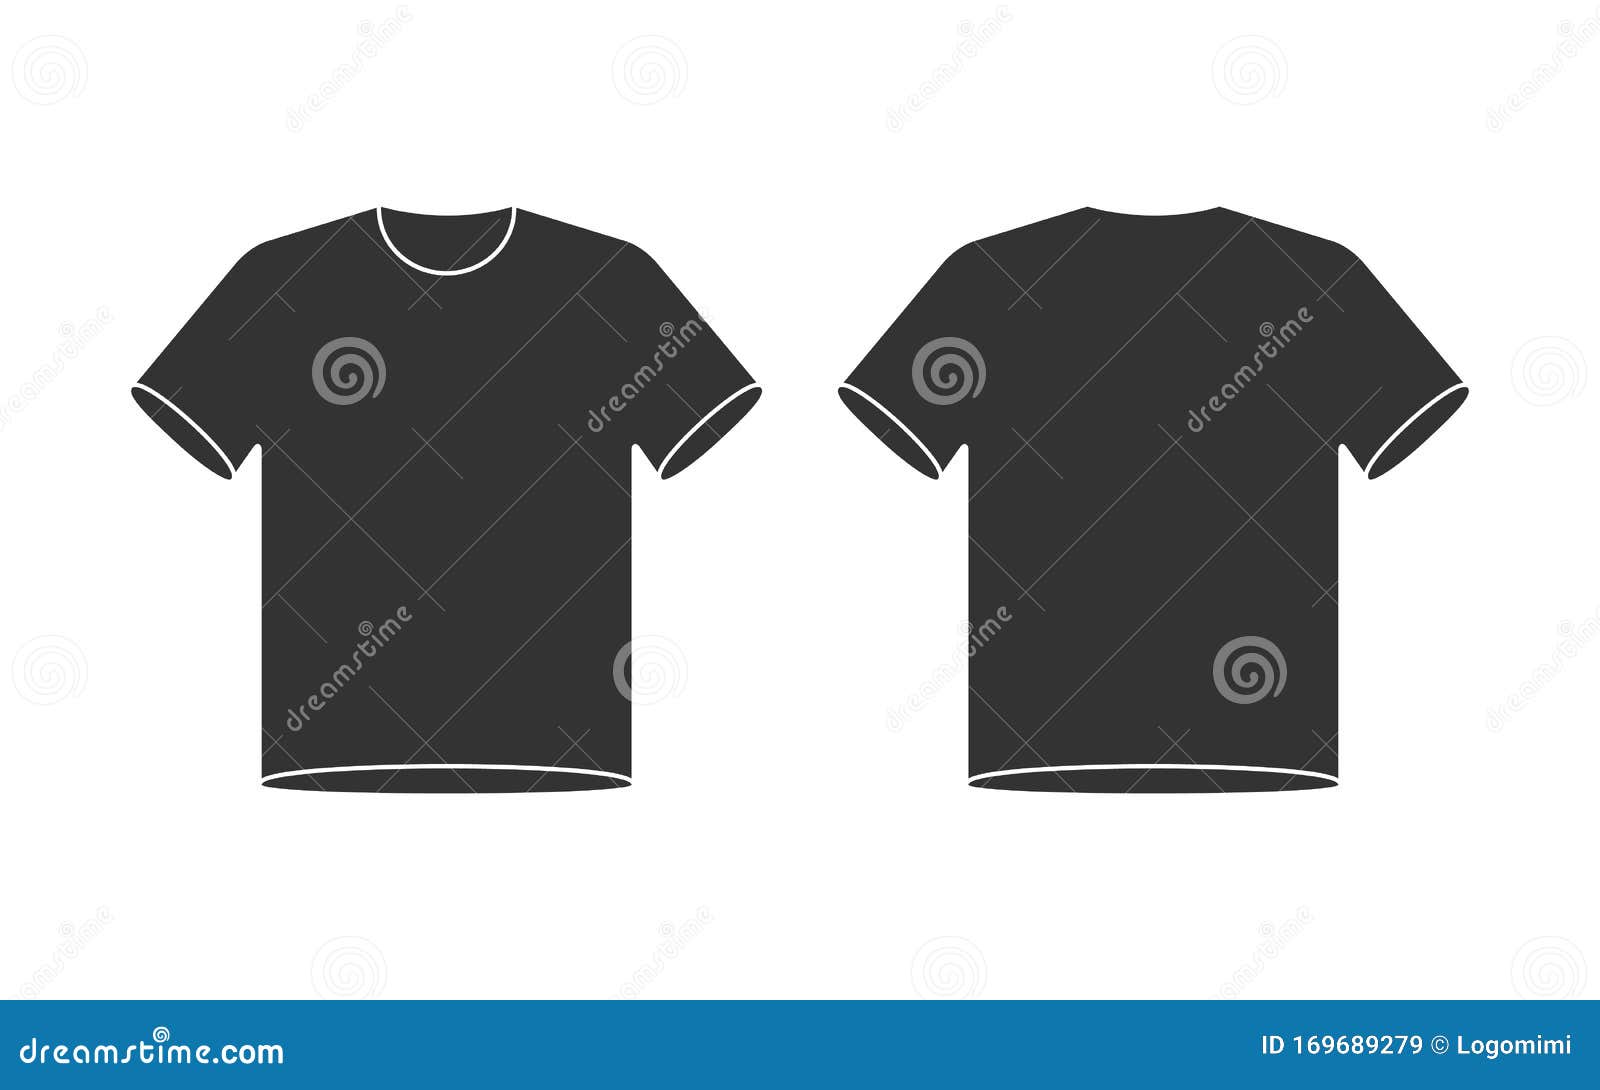 Blank-T-Shirt-Mockup, Vorder- Und Rückseite-Shirt-Vorlage Regarding Blank Tee Shirt Template